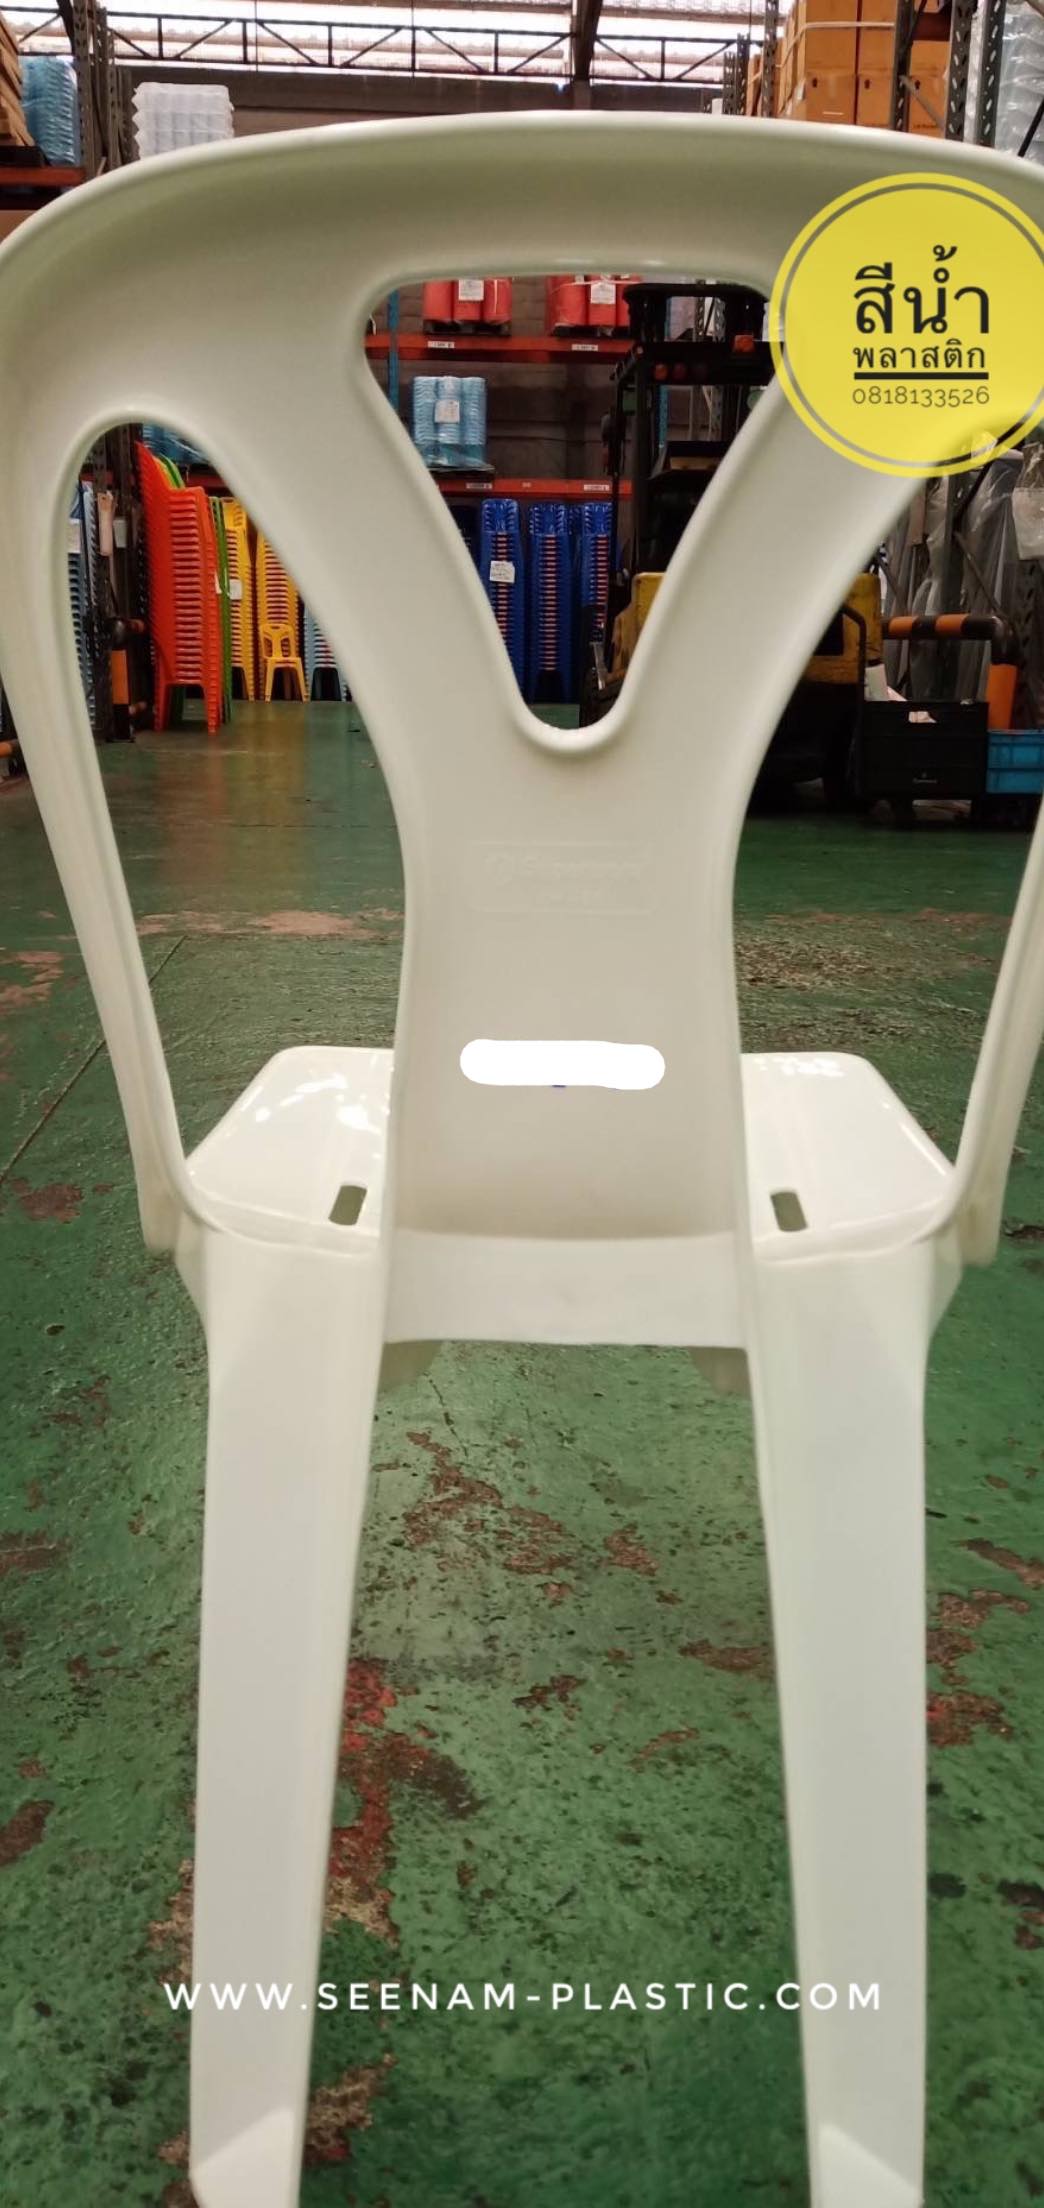  เก้าอี้พลาสติกศรีไทย, เก้าอี้พลาสติกsuperware, เก้าอี้ศรีไทยซุปเปอร์แวร์, เก้าอี้พลาสติกซุปเปอร์แวร์, เก้าอี้ซุปเปอร์แวร์, เก้าอี้ศรีไทย, เก้าอี้superware